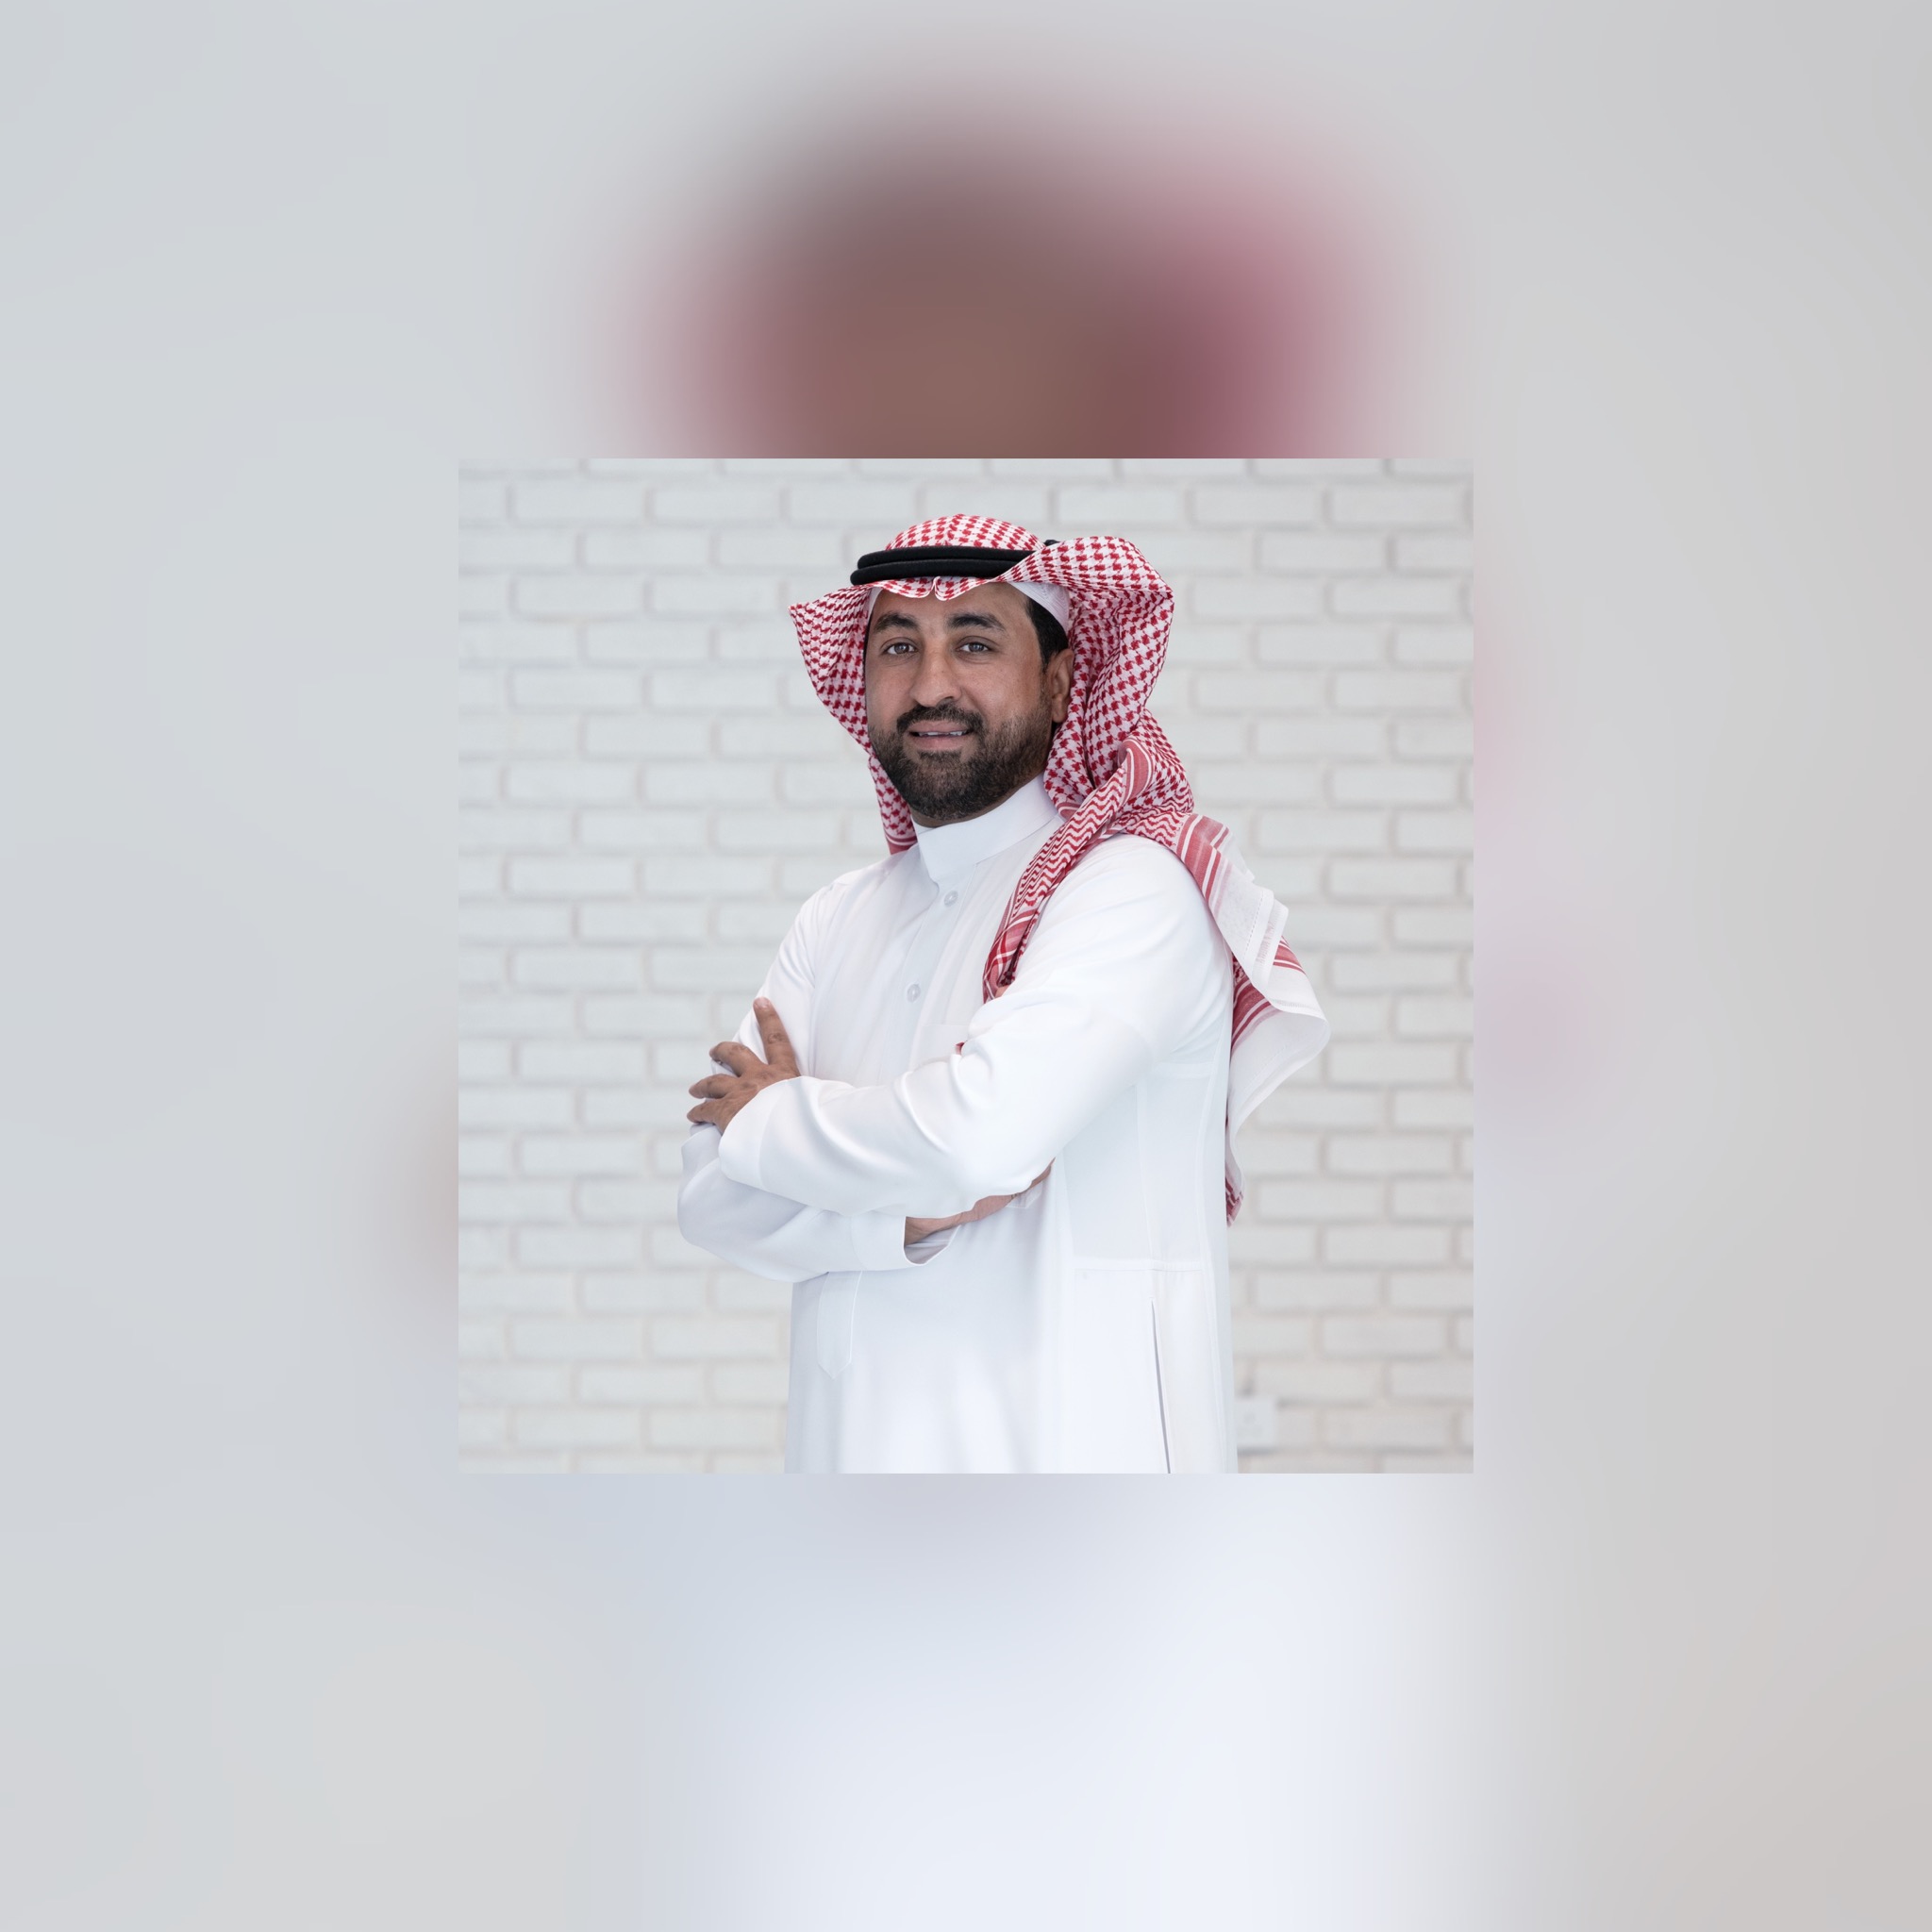 Mohammed Al-Enazi, Alhokair Fashion Retail